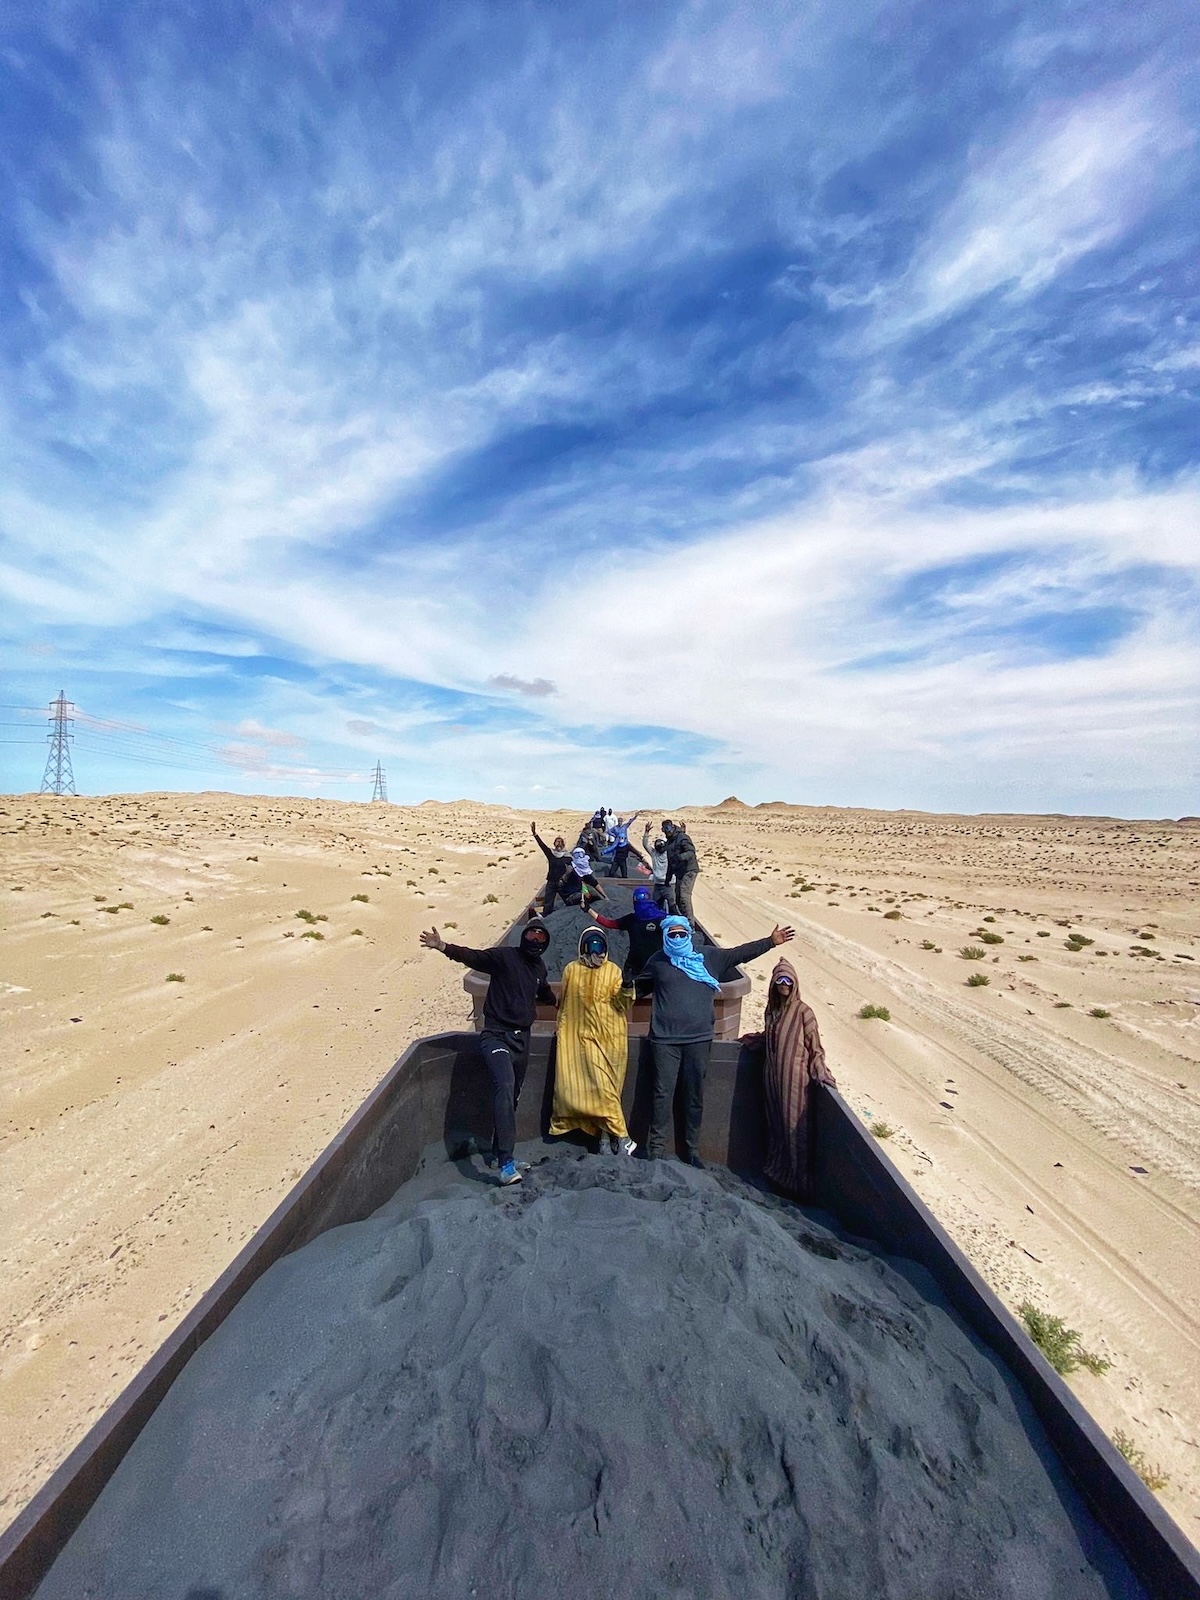 Tourists on the iron ore train in Mauritania riding through the Sahara Desert